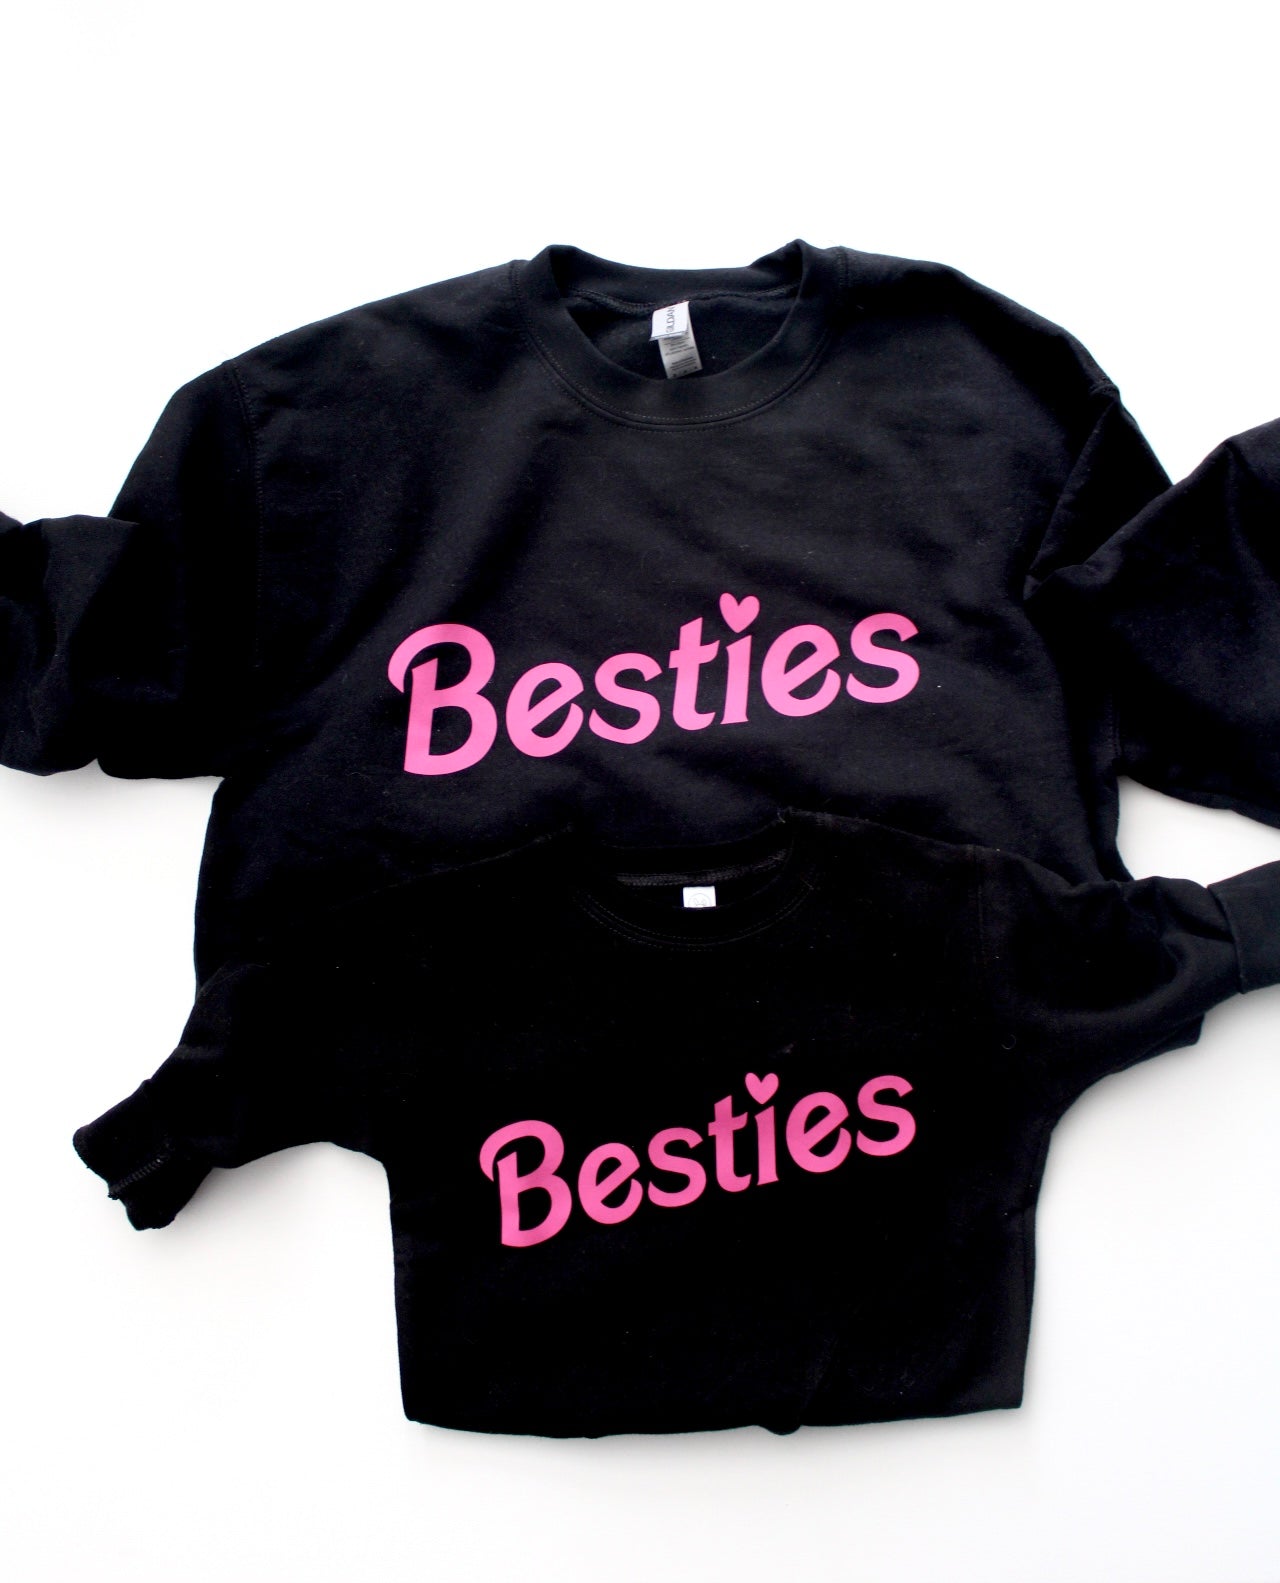 Besties sweatshirts